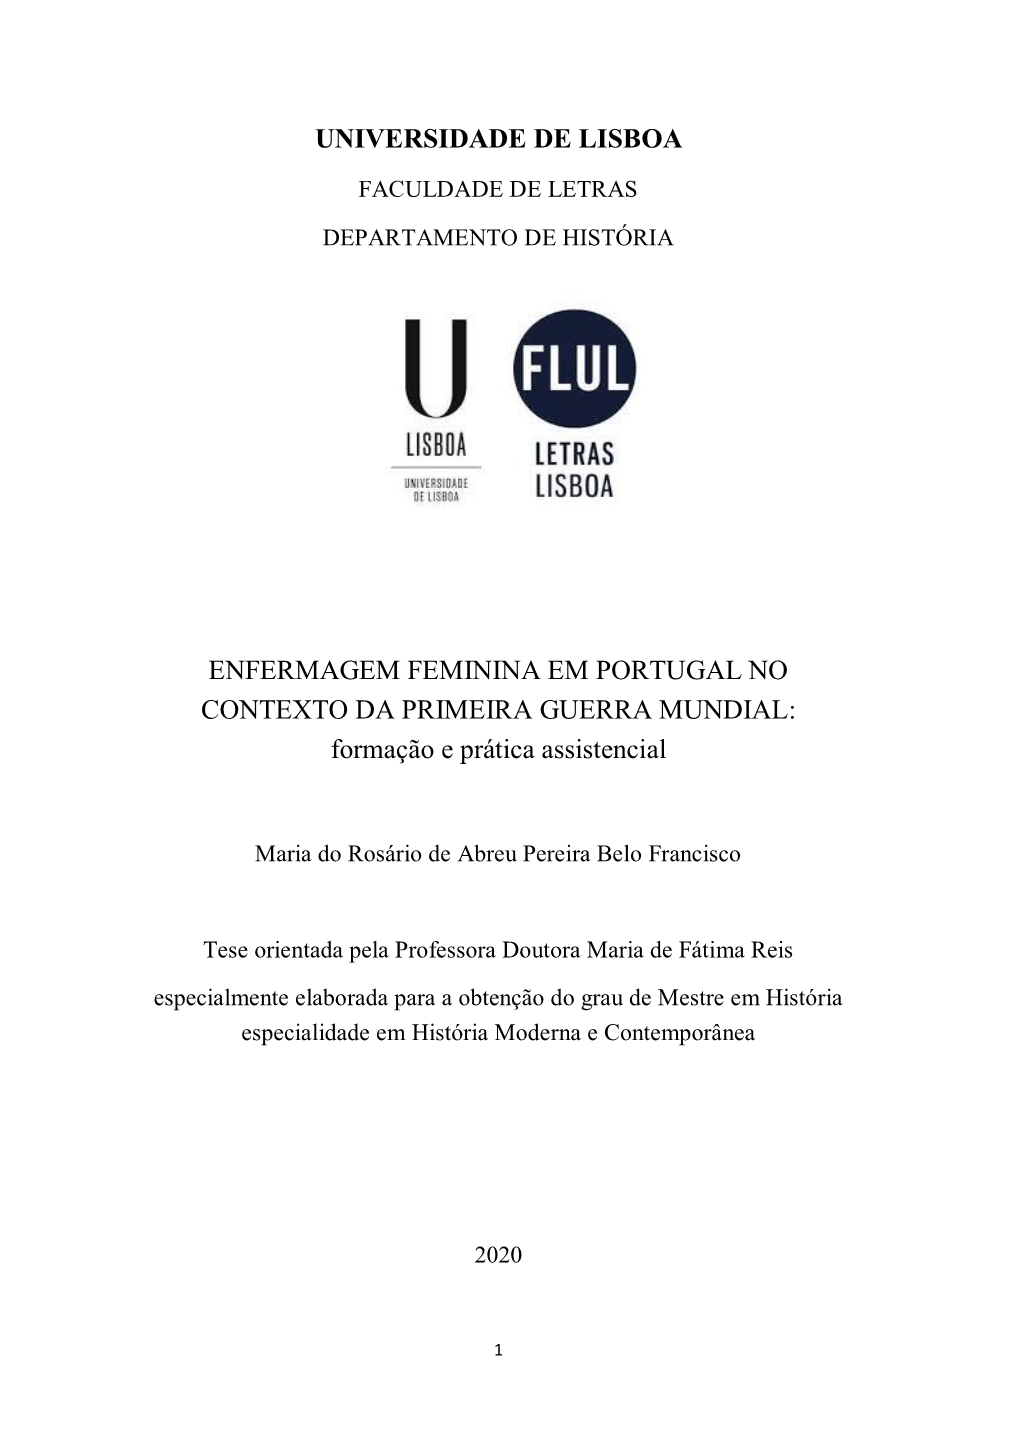 UNIVERSIDADE DE LISBOA ENFERMAGEM FEMININA EM PORTUGAL NO CONTEXTO DA PRIMEIRA GUERRA MUNDIAL: Formação E Prática Assistencia